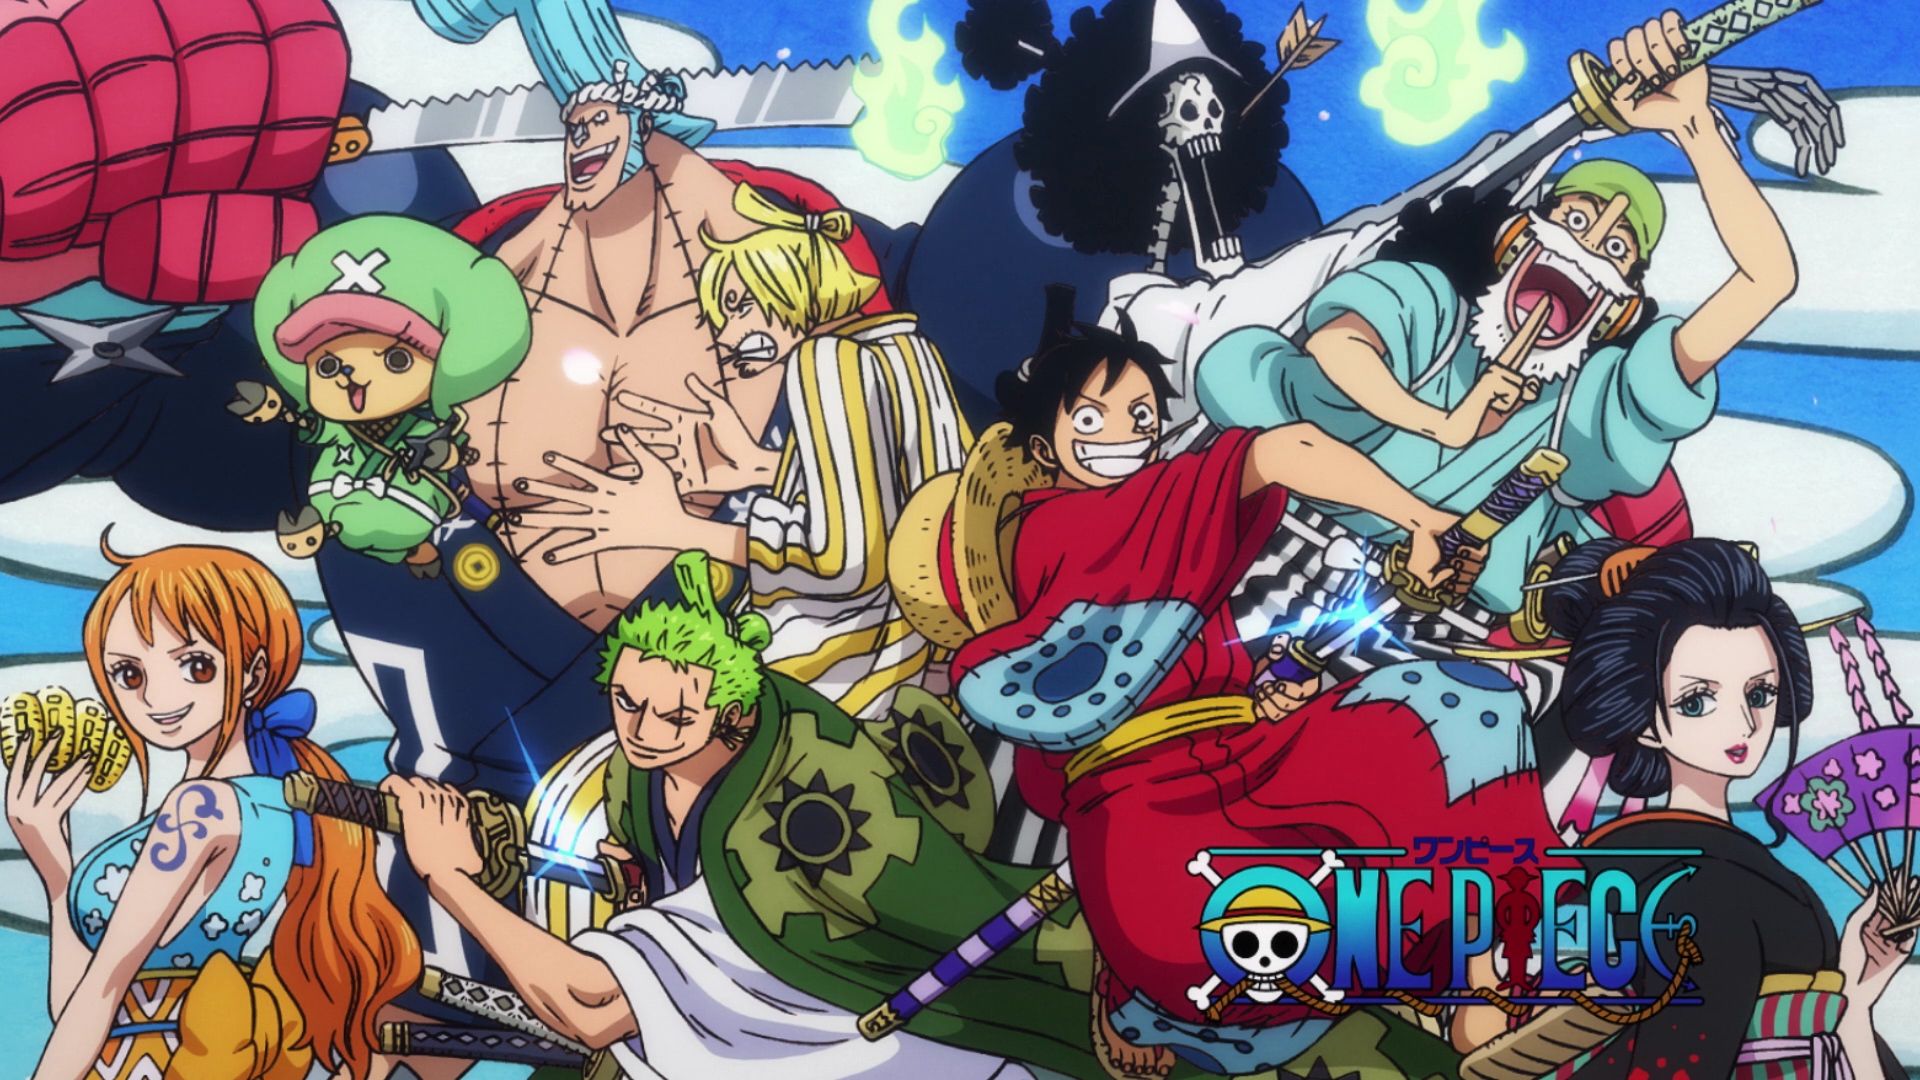 Preview de One Piece 976 nos mostra o retorno ao presente de Wano